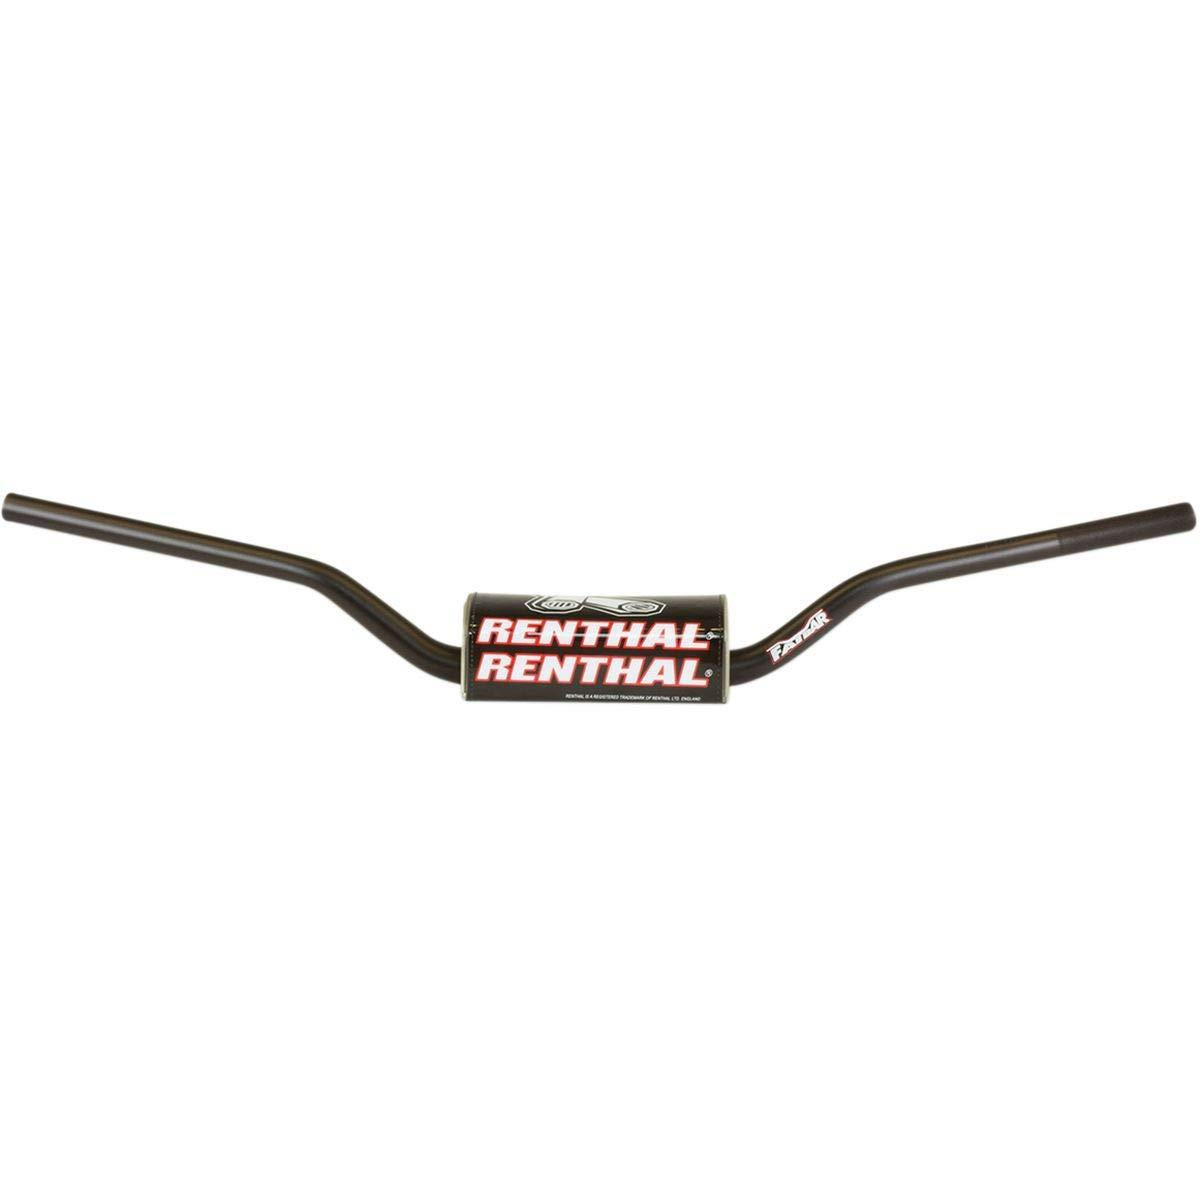 Renthal Fat Bar Fatbar Handlebars Honda 672-01 Black KTM SX/SX-F 09-12 SUZUKI RM/RMZ 06-13